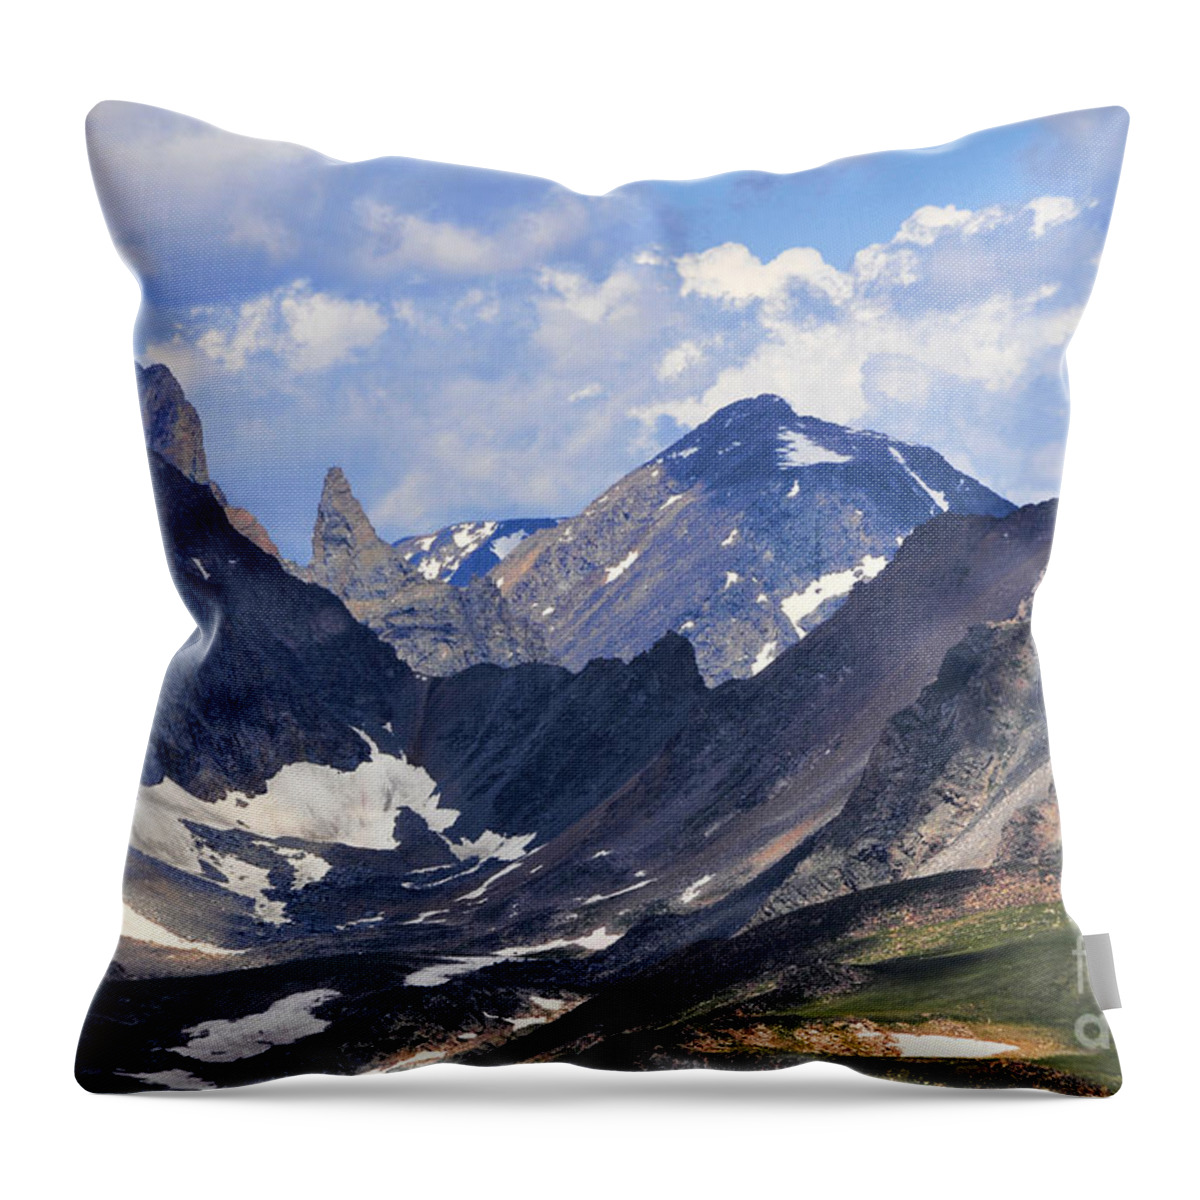 Beartooth Mountain Throw Pillow featuring the photograph Beartooth Mountain by Gary Beeler